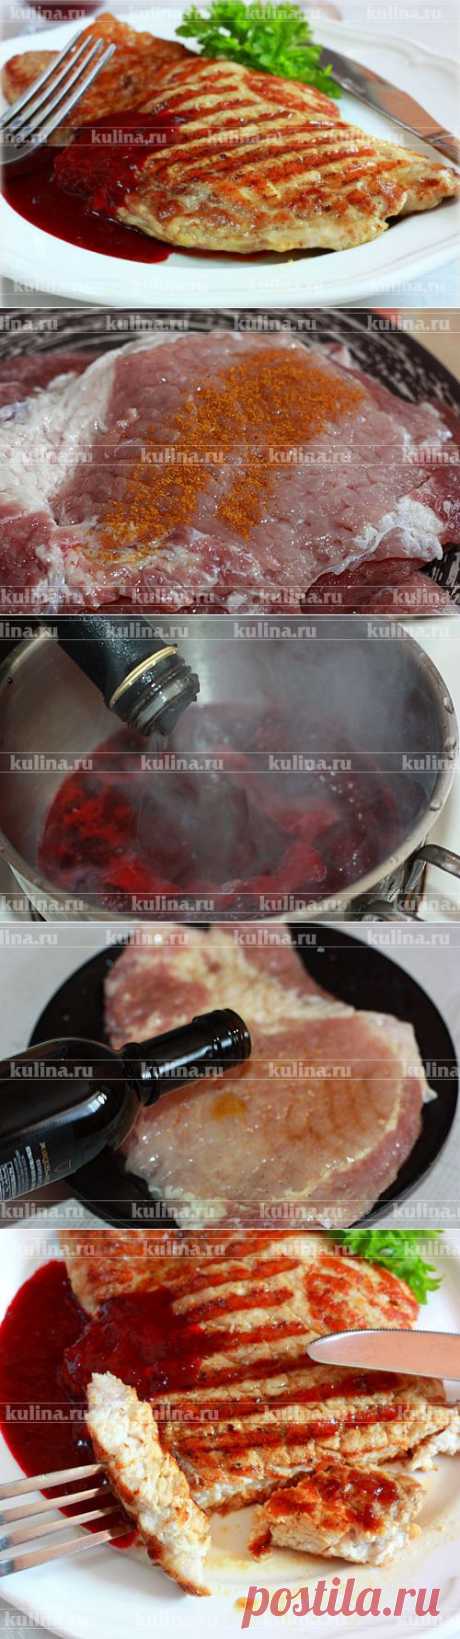 Карбонат на гриле с вишневым соусом – рецепт приготовления с фото от Kulina.Ru